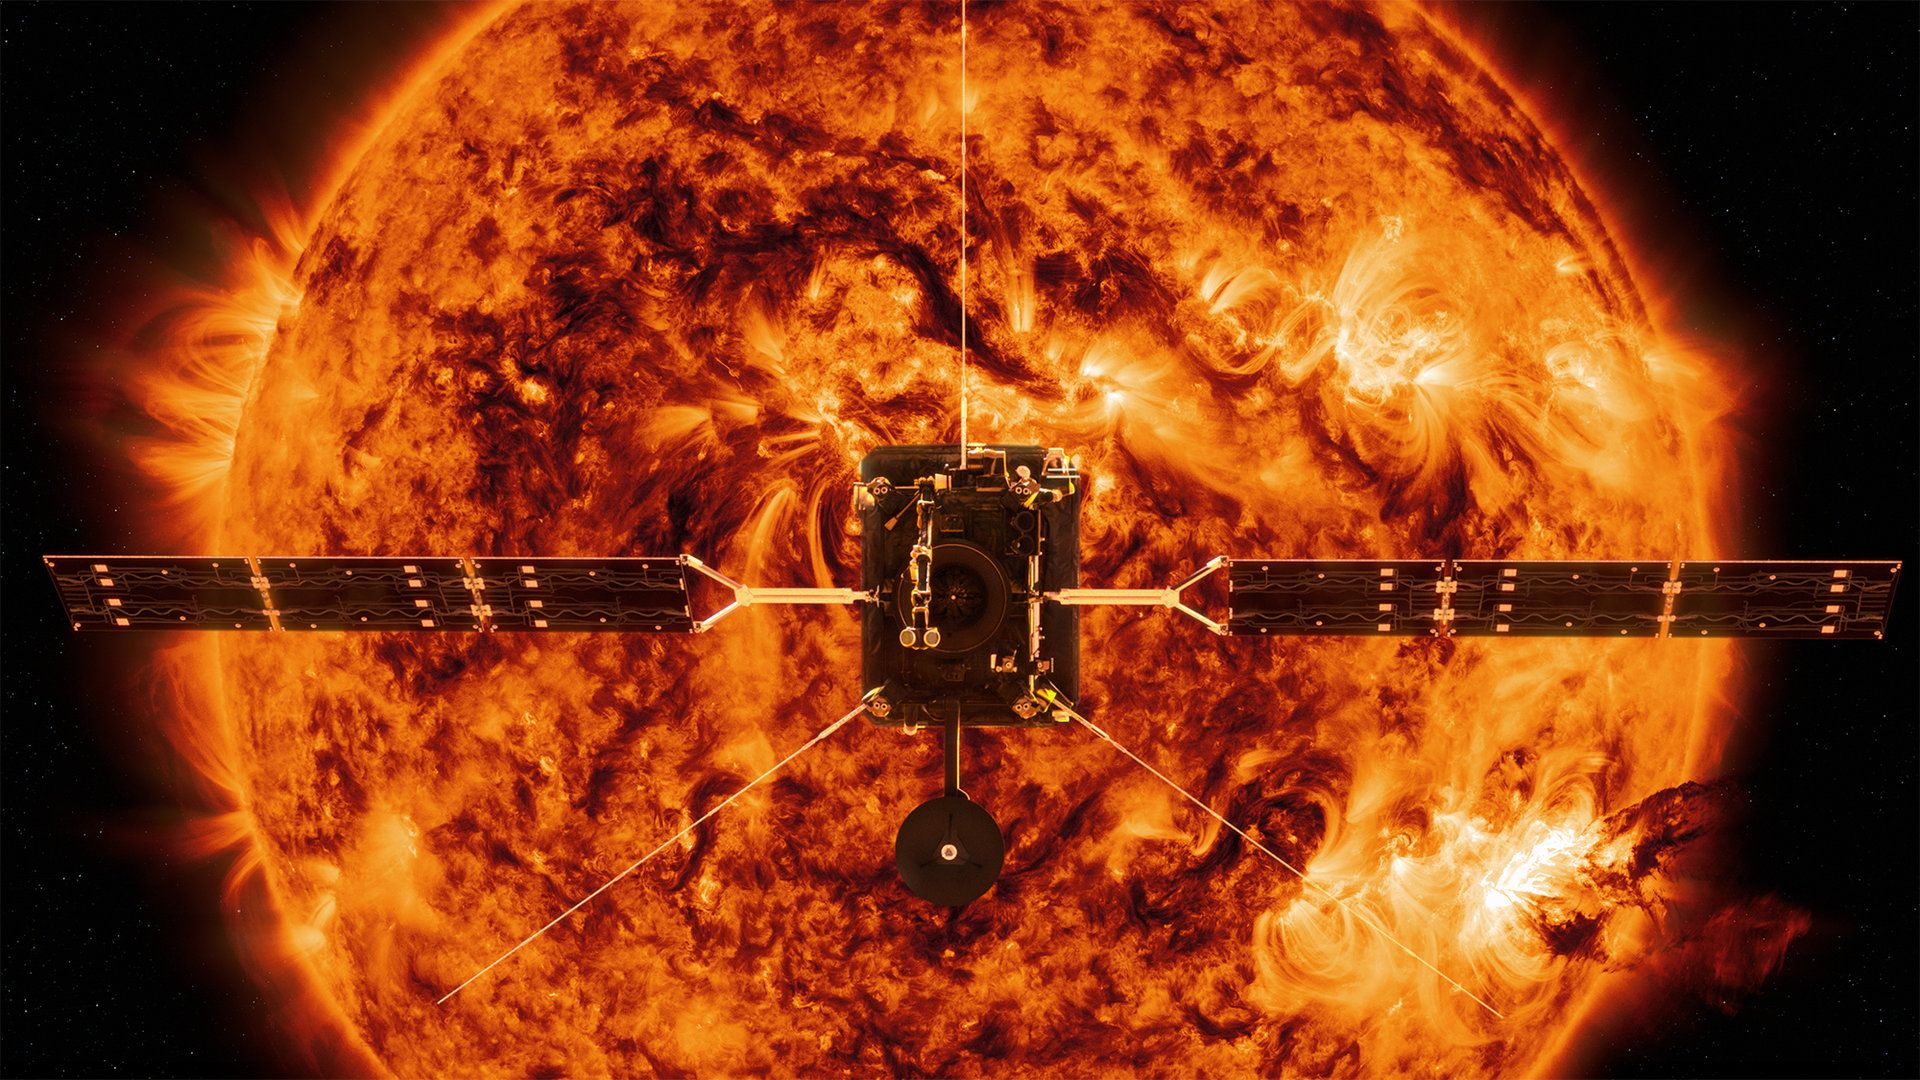 Agencia Espacial Europea enviará una misión a observar regiones desconocidas del Sol